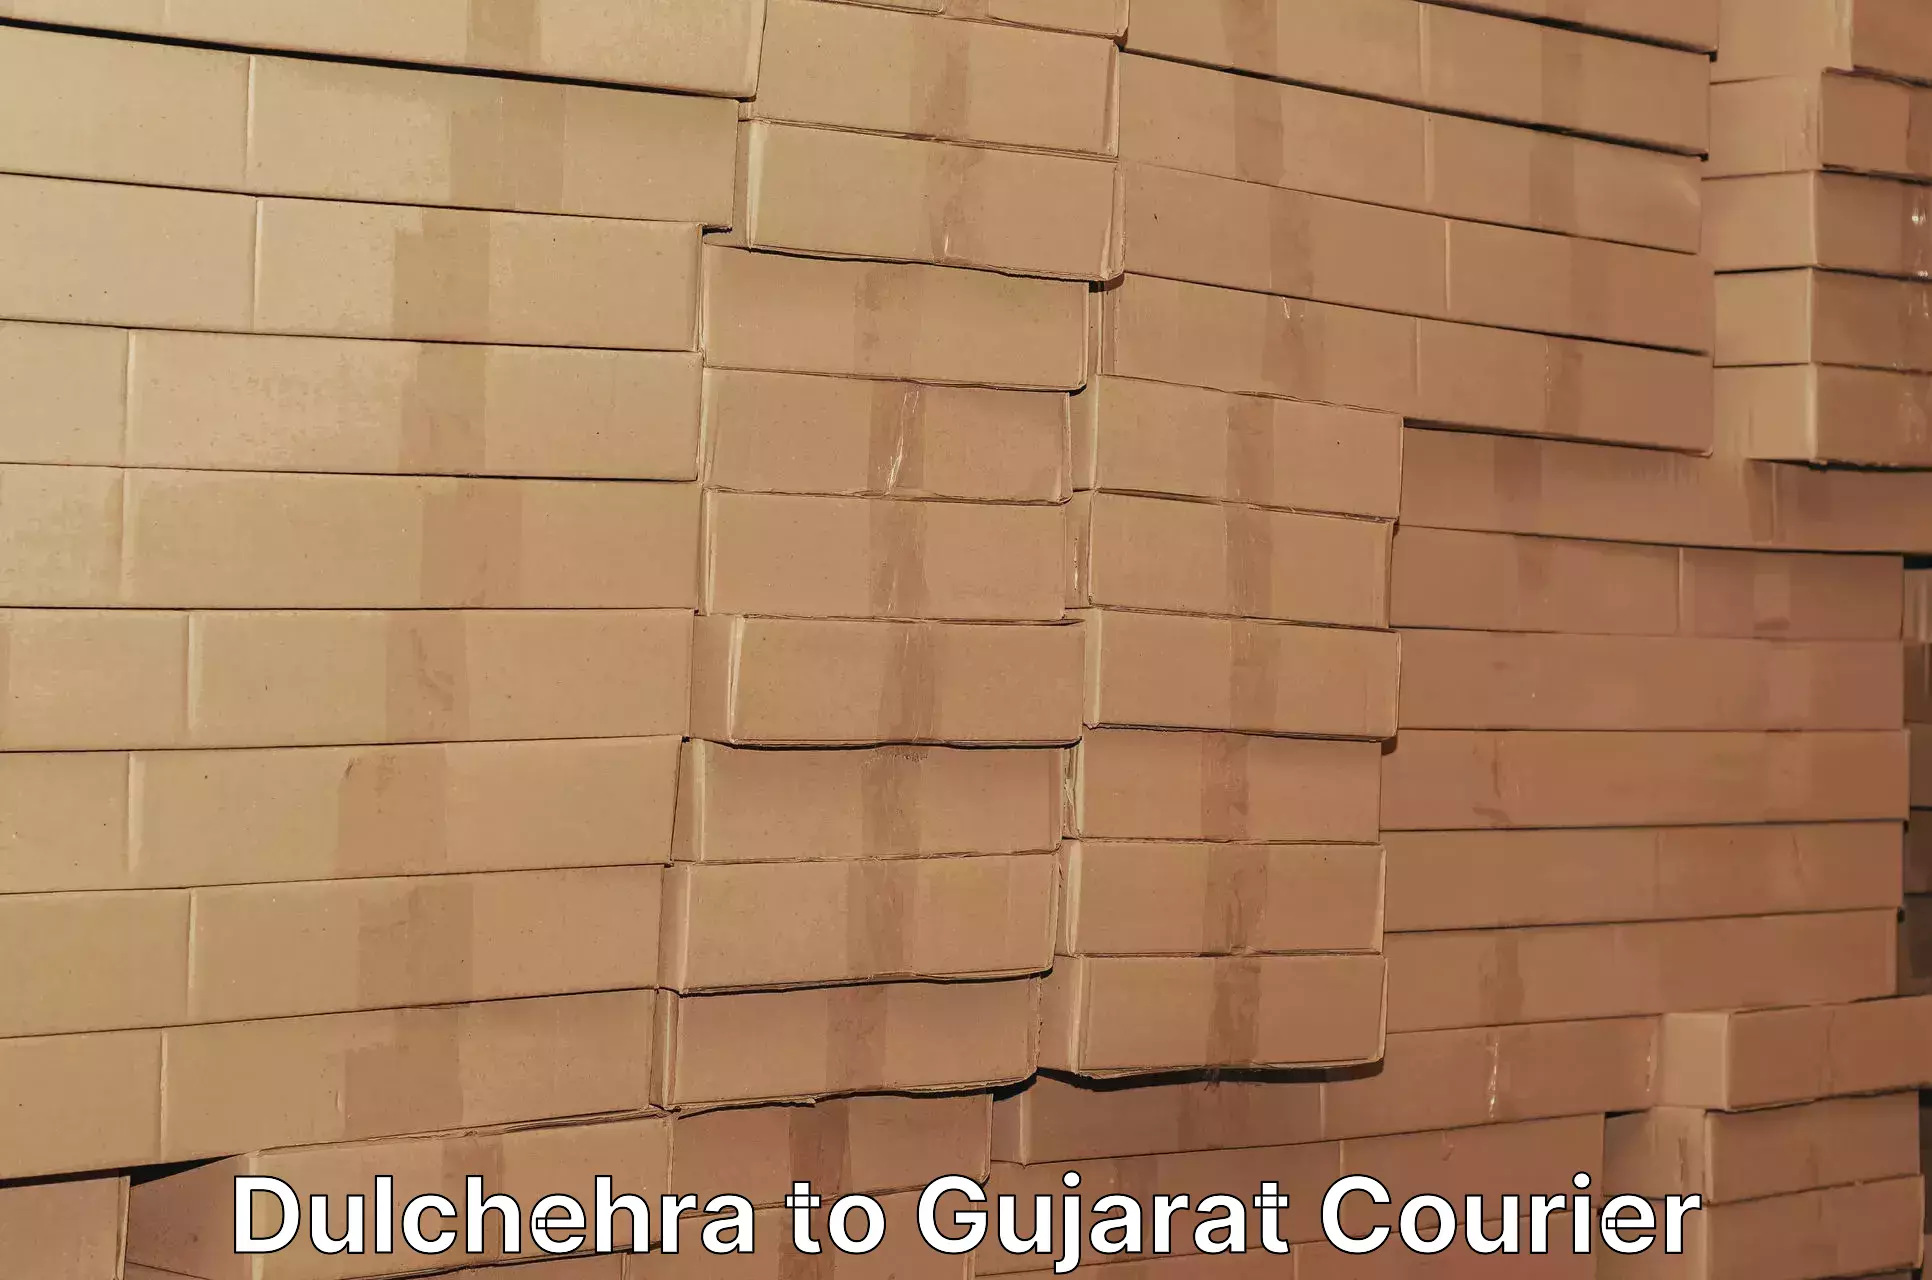 Urgent courier needs Dulchehra to Madhavpur